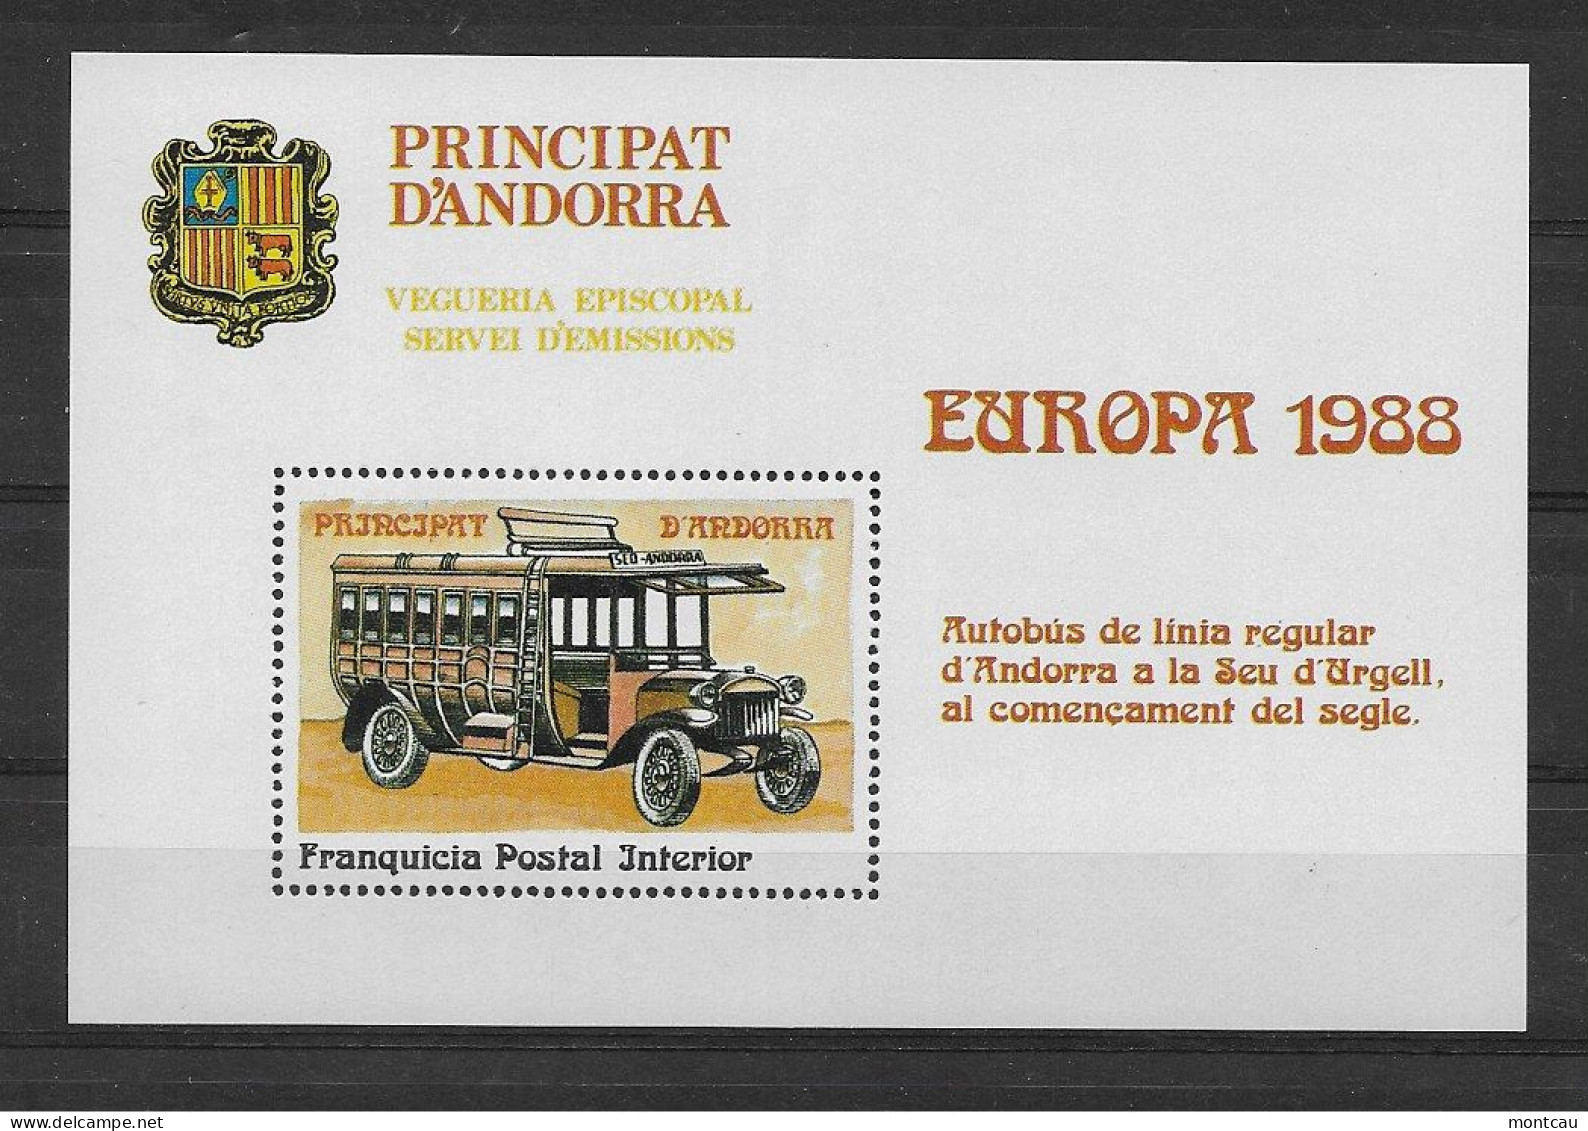 Andorra - 1988 - Vegueria Episcopal Europa - Vegueria Episcopal